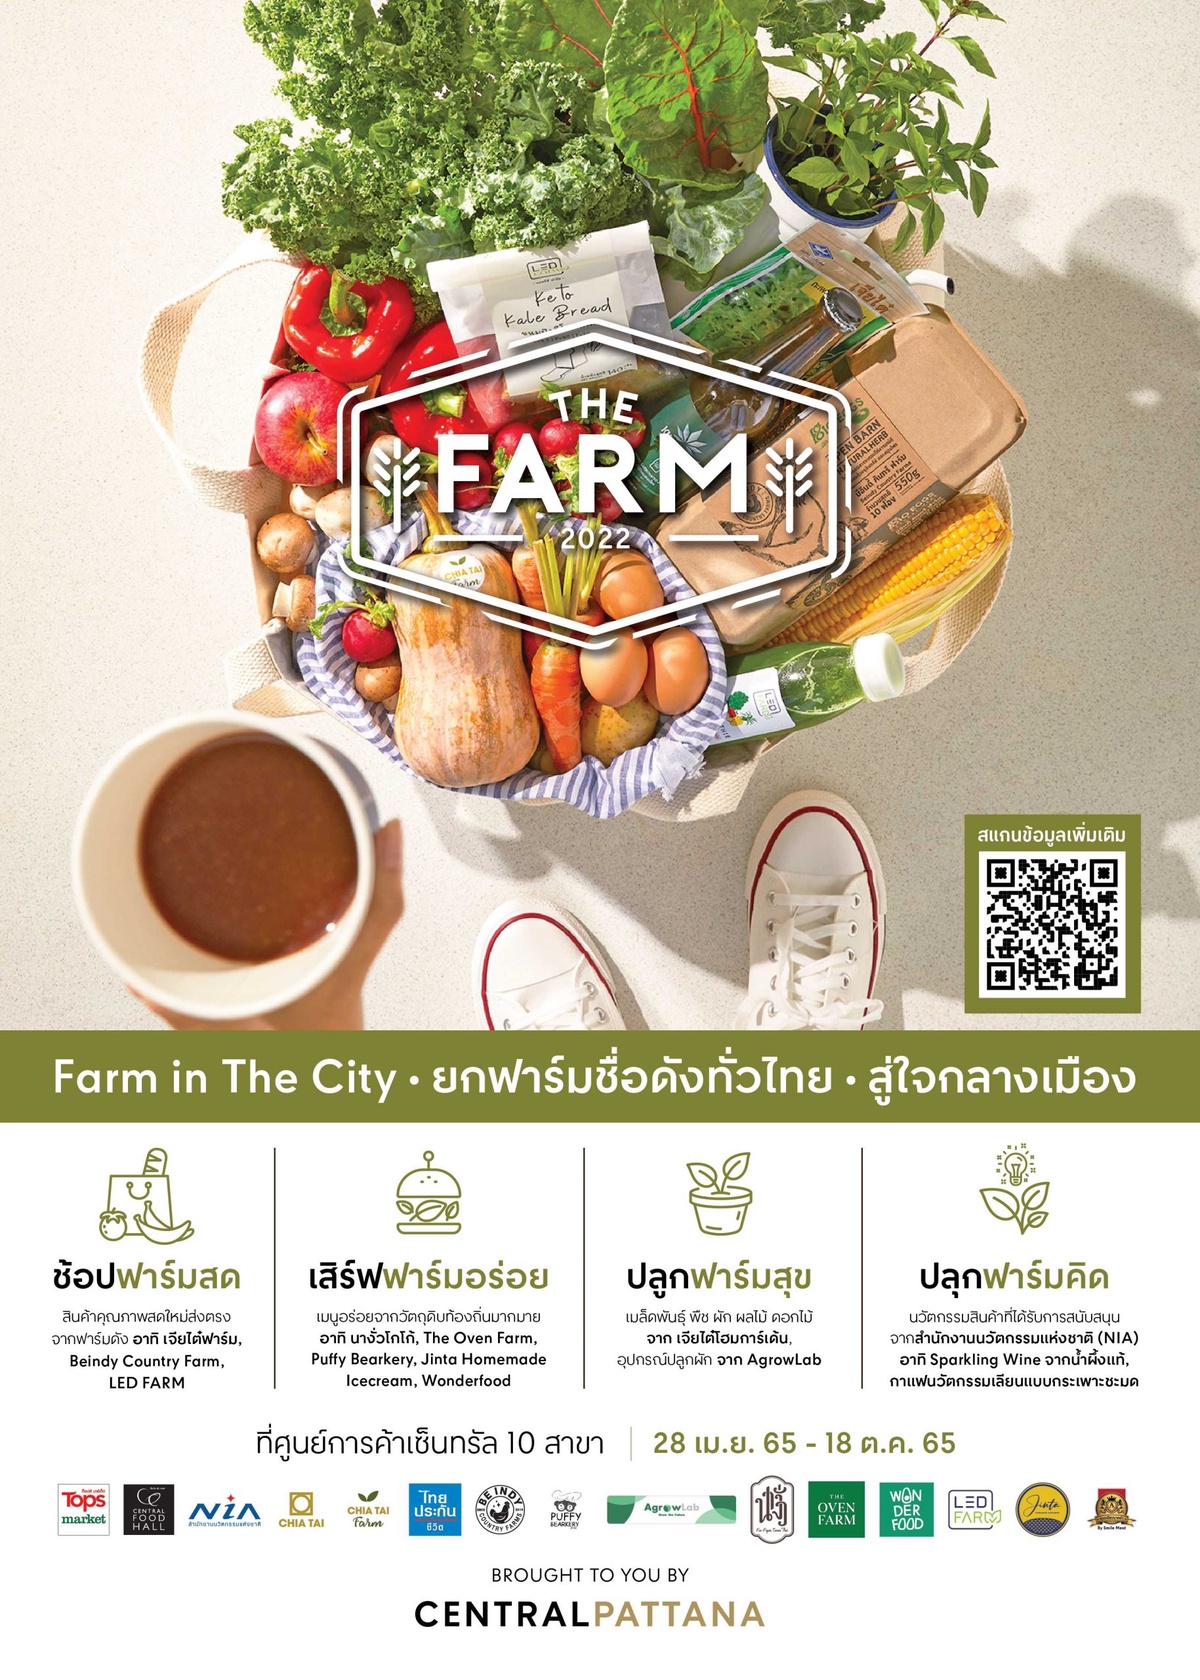 เริ่มแล้ว งาน THE FARM 2022 ชวนสัมผัสรสชาติฟาร์มสุข จากฟาร์มคุณภาพชื่อดังทั่วไทย ส่งตรงสู่ใจกลางเมือง